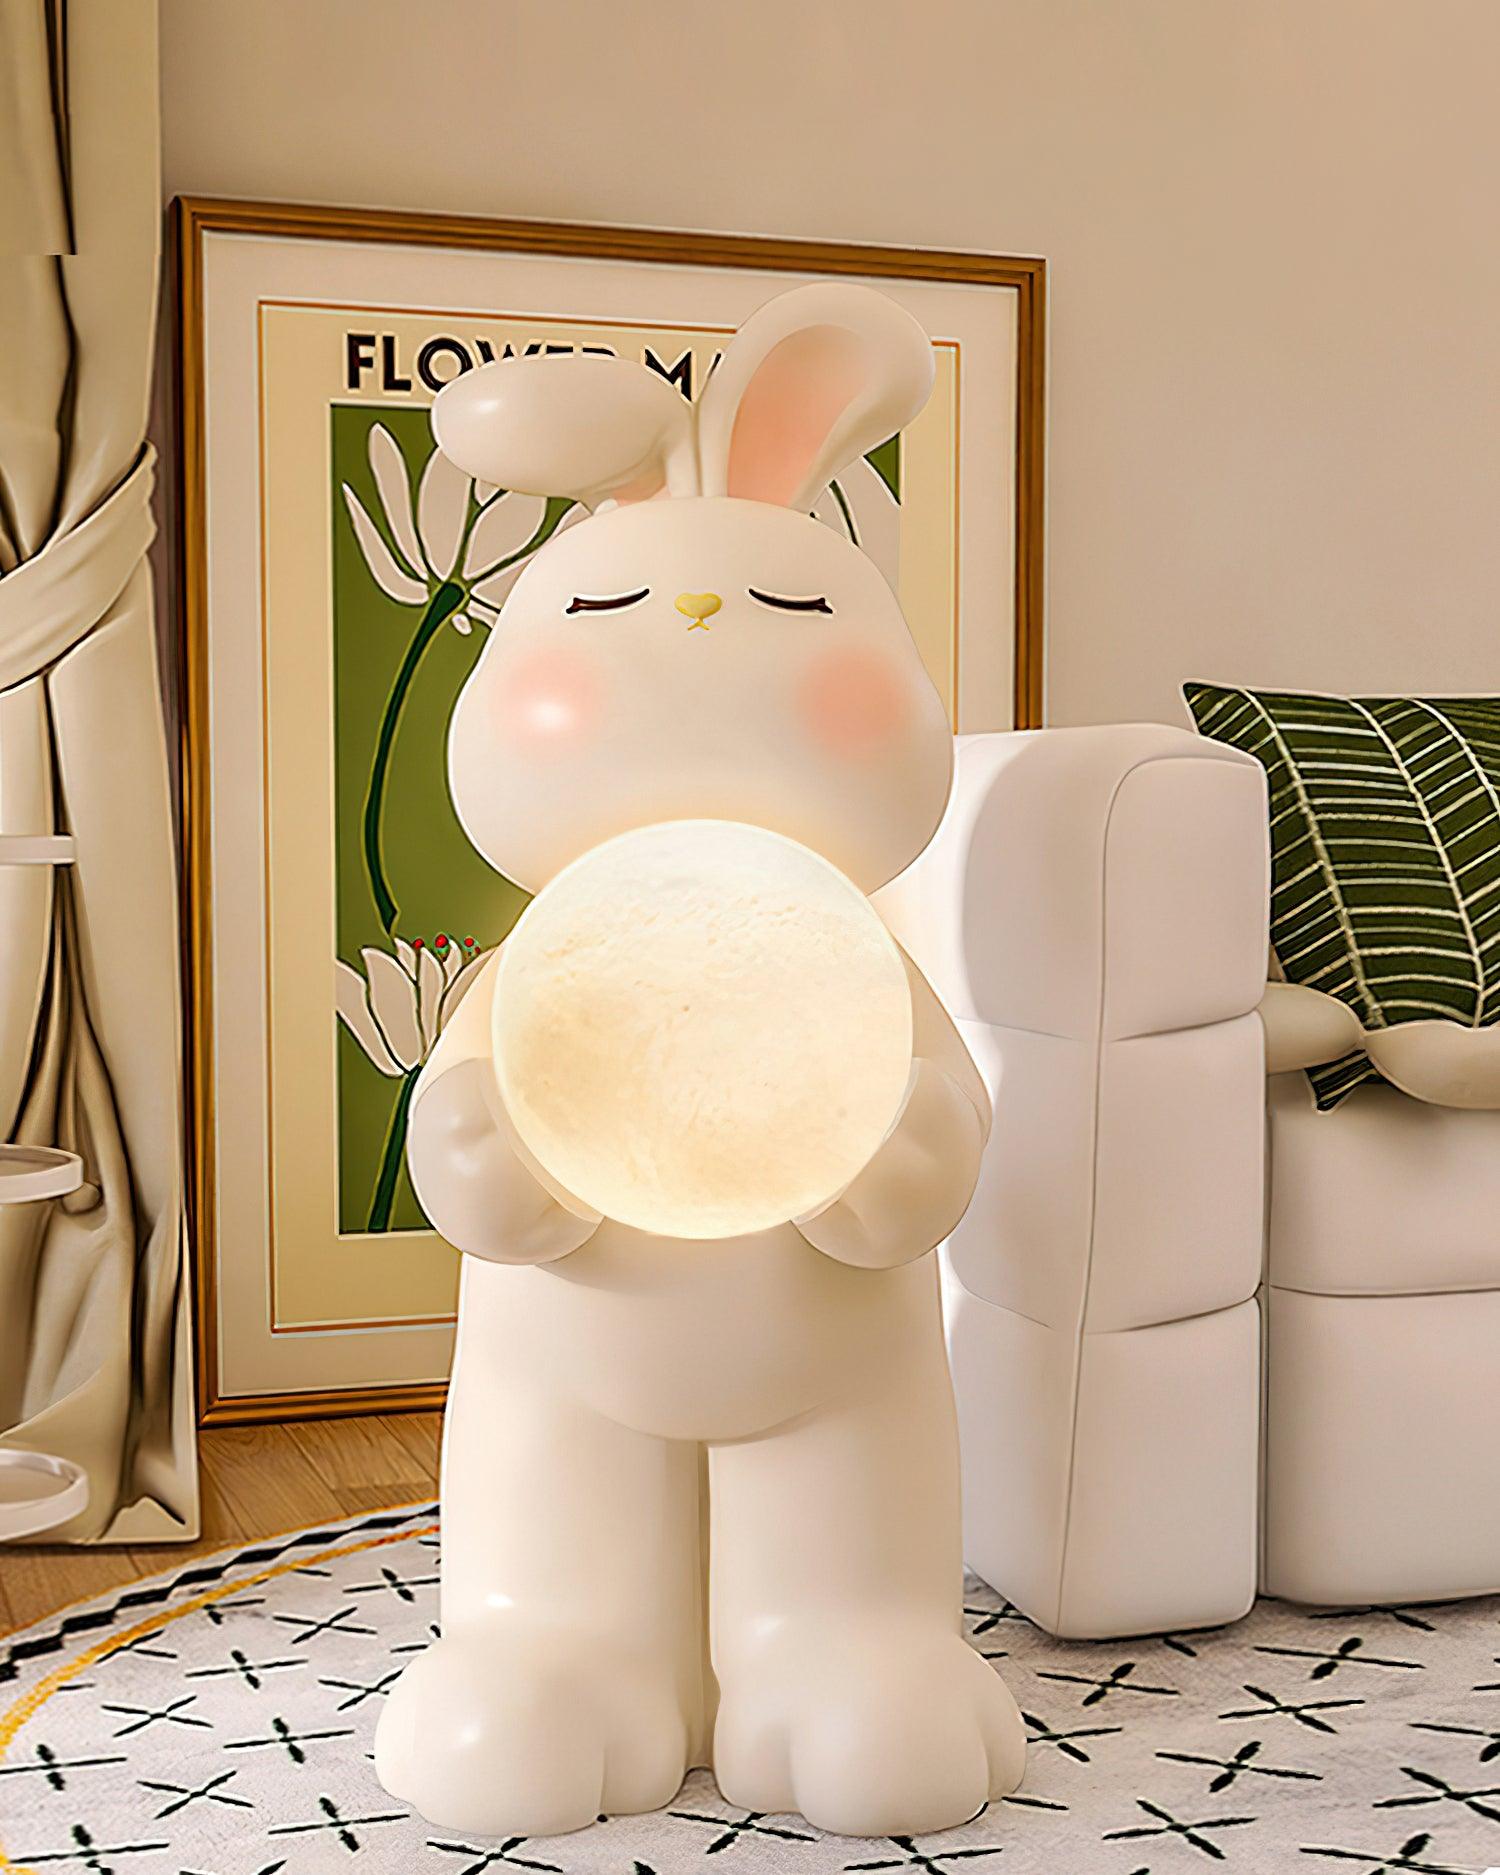 Moon Rabbit Floor Lamp 9.8″- 24.8″